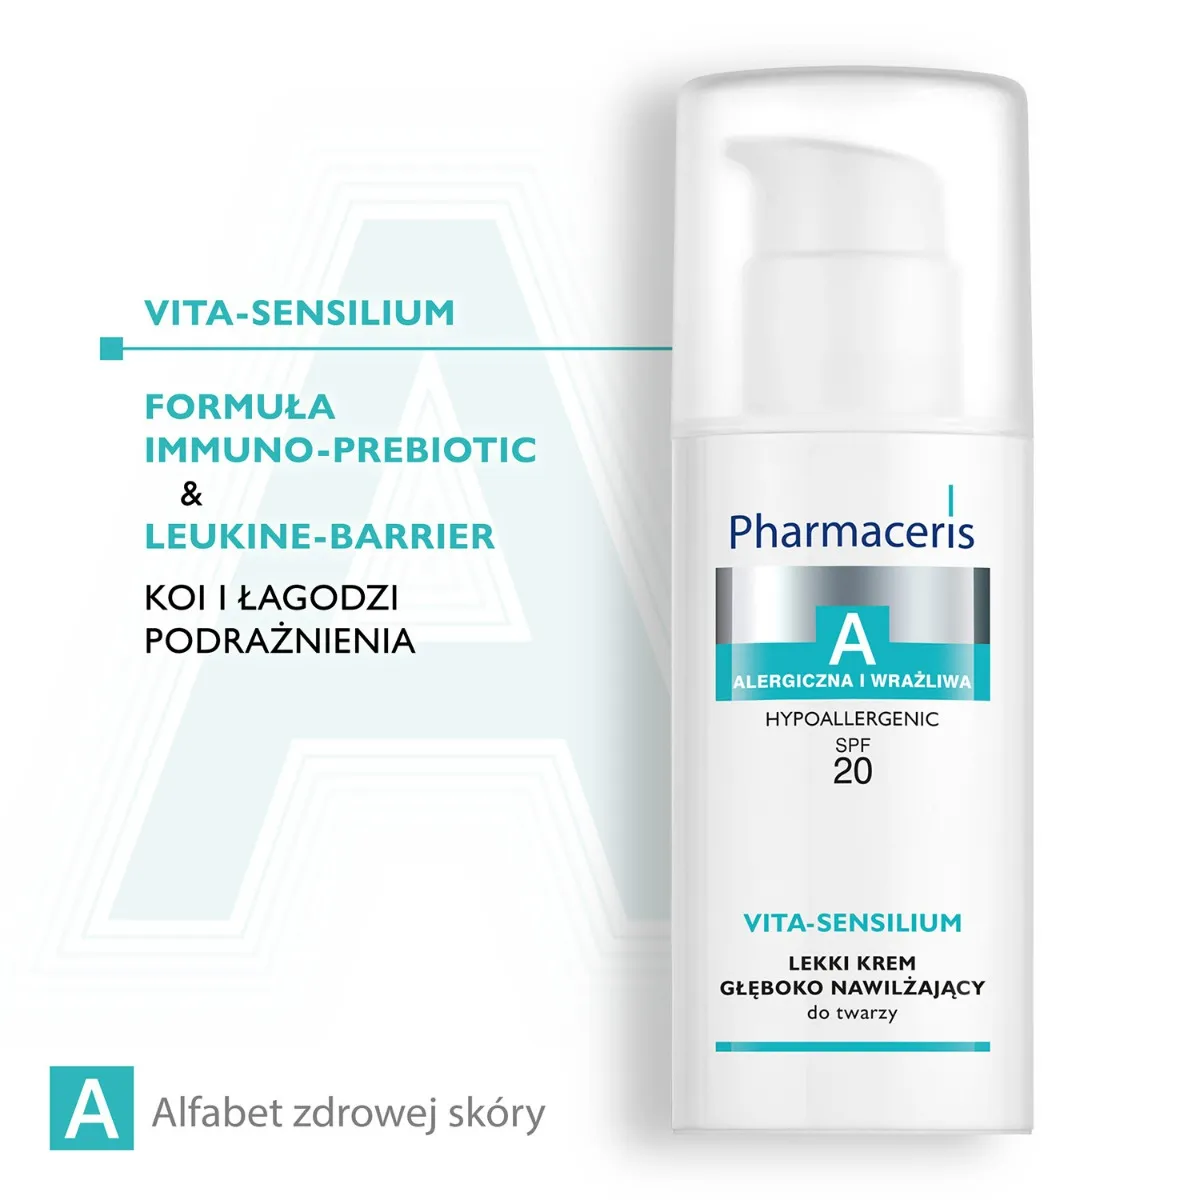 Pharmaceris A Vita-Sensilium, lekki krem głęboko nawilżający do twarzy SPF 20, 50 ml 